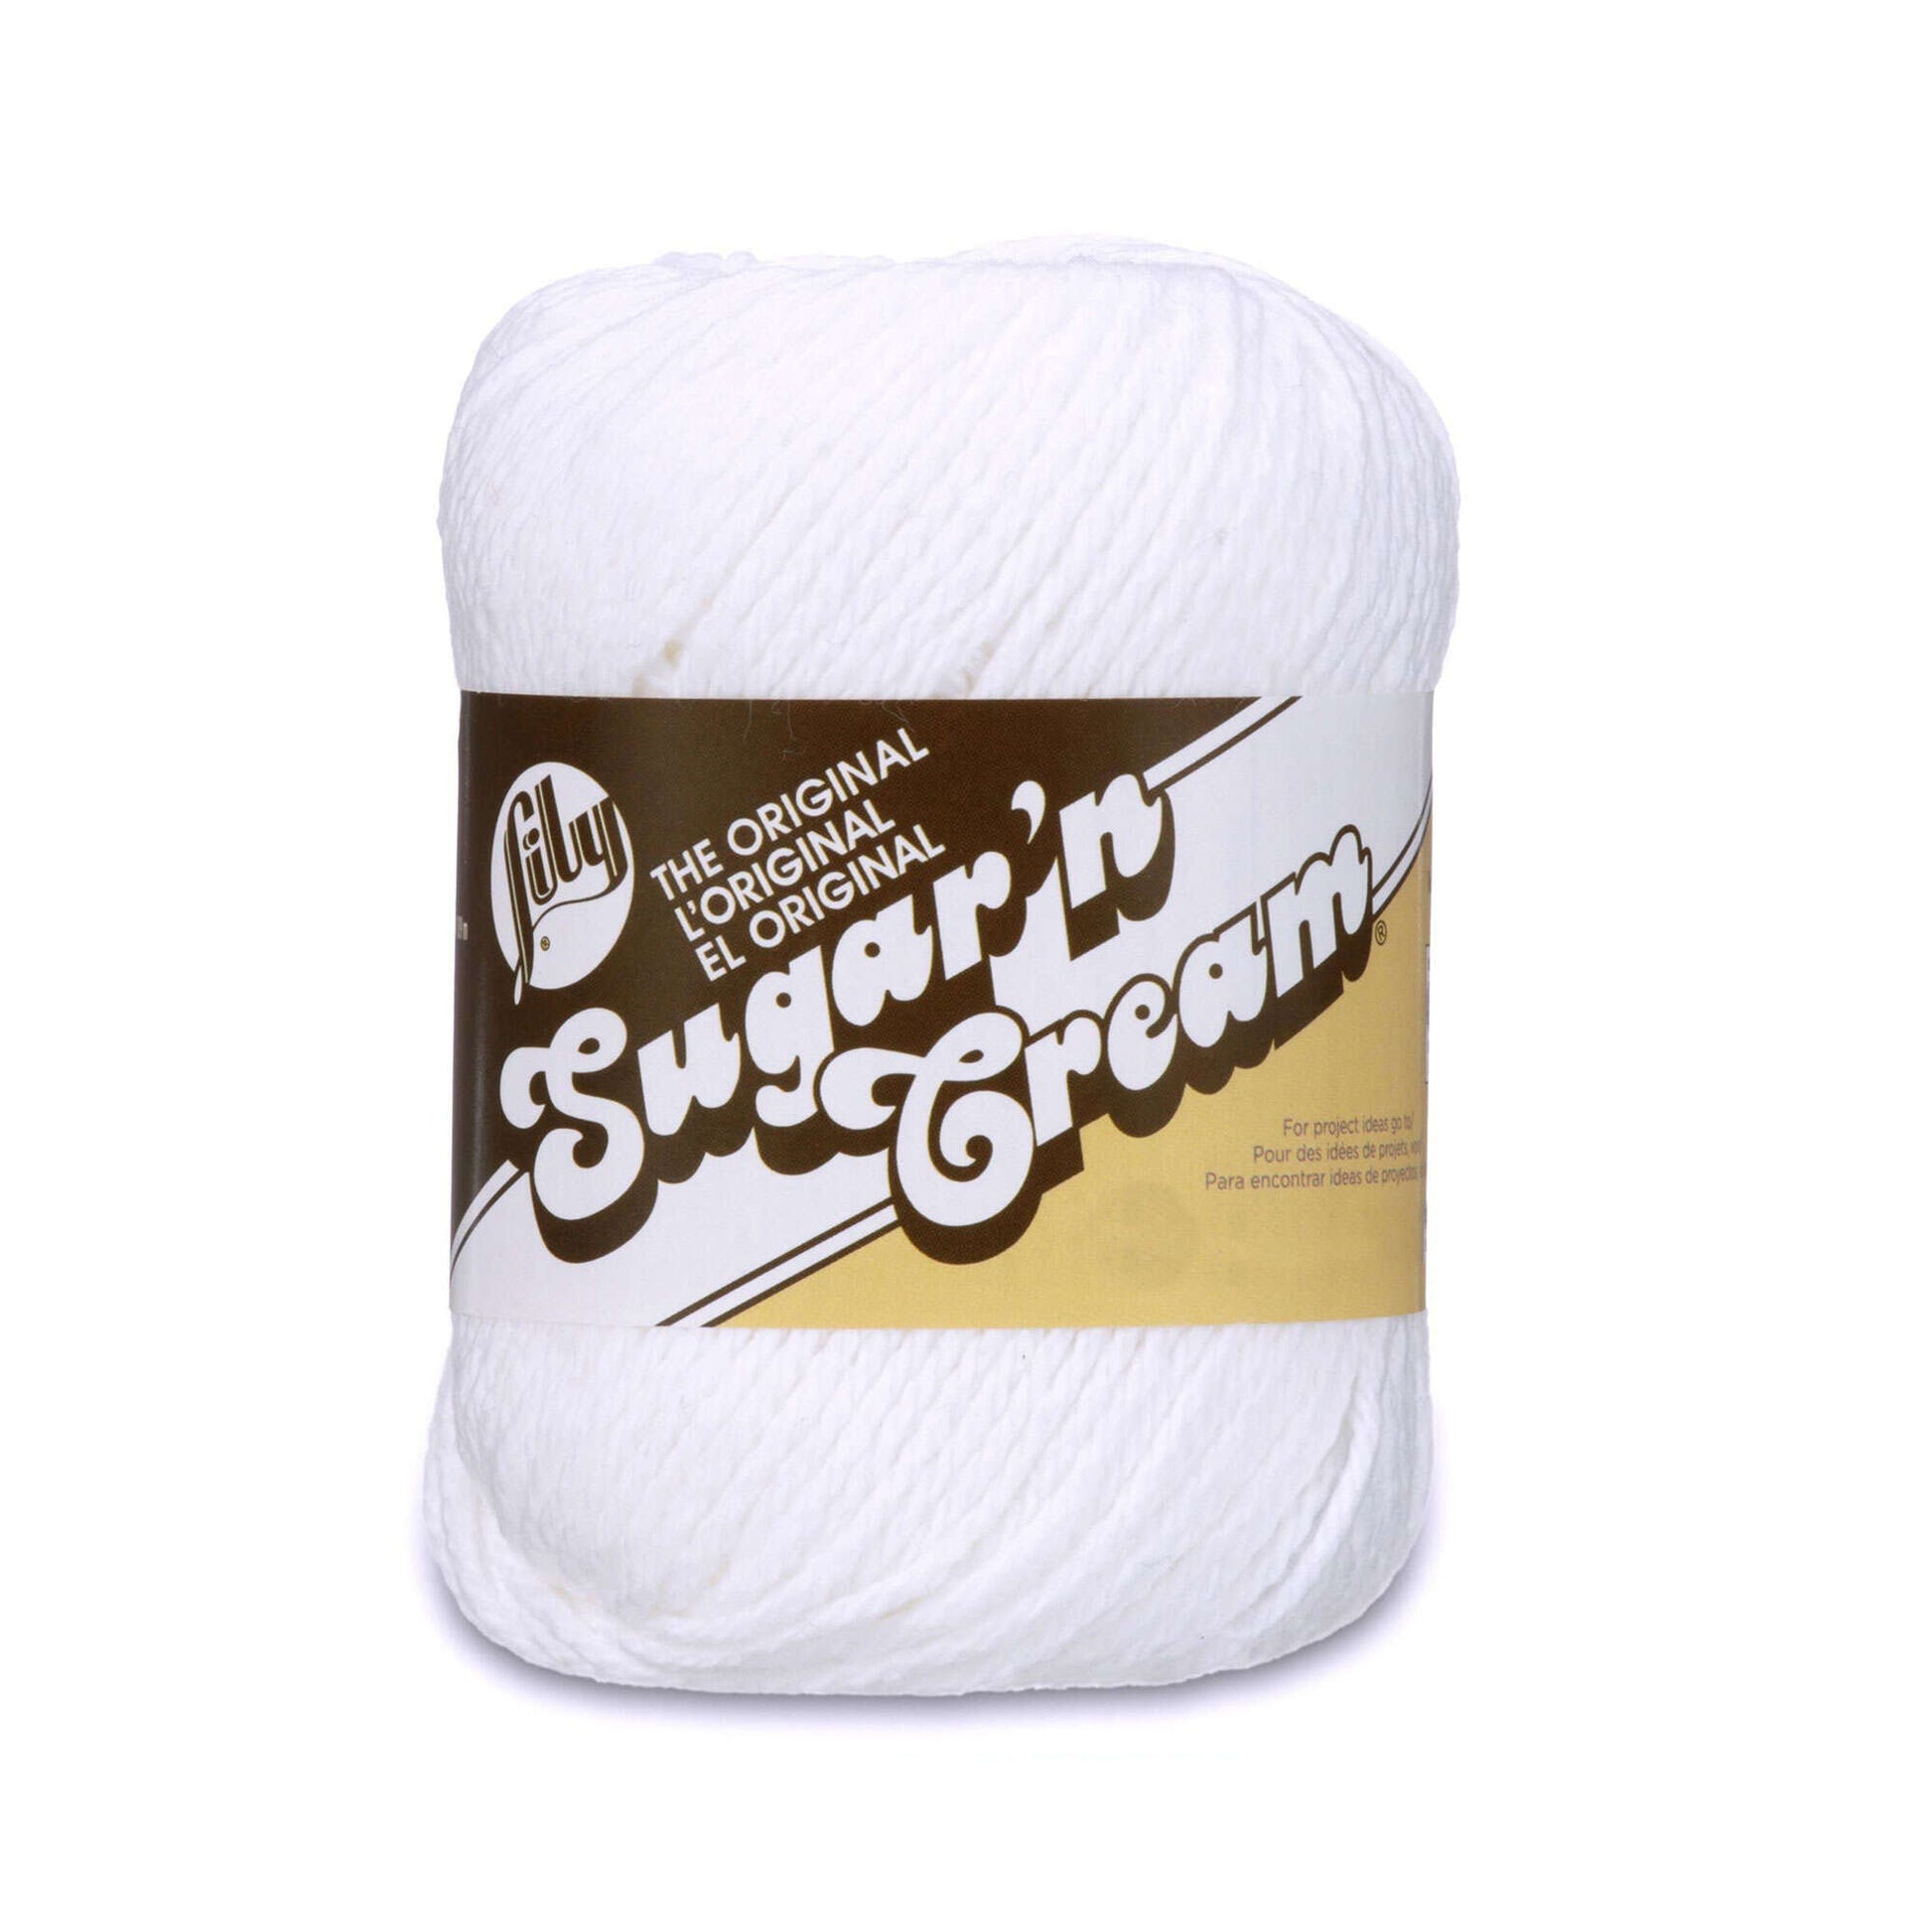 Lily Sugar'N Cream Dazzle Blue Yarn - 6 Pack of 71g/2.5oz - Cotton - 4  Medium (Worsted) - 120 Yards - Knitting/Crochet